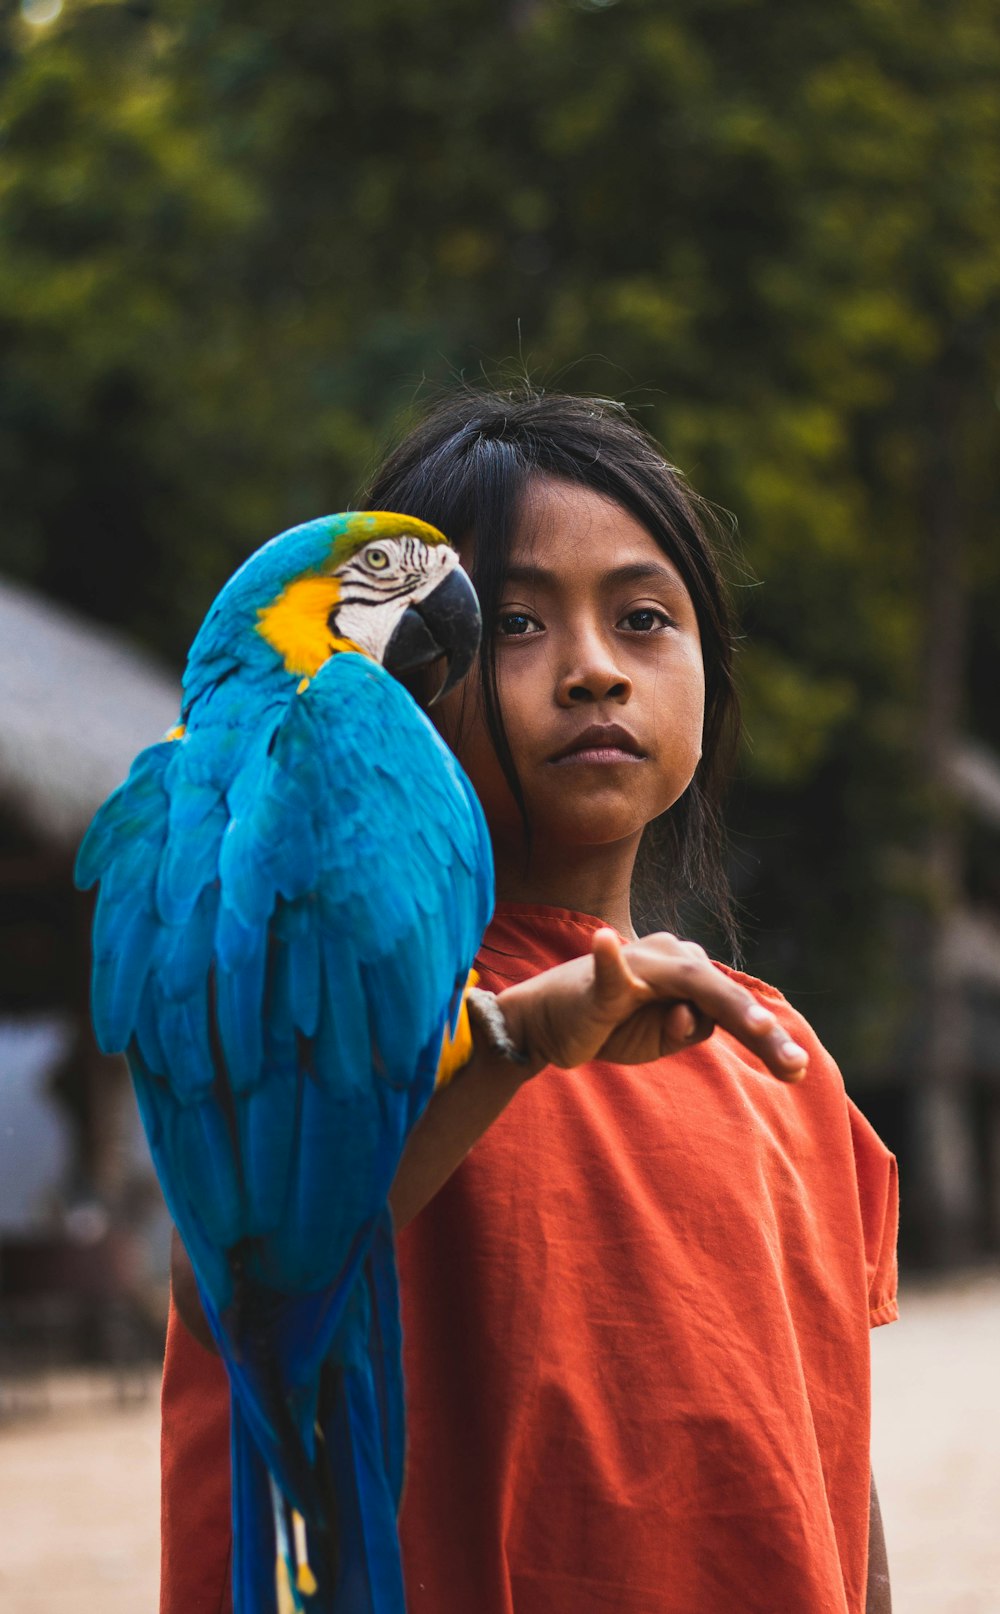 Fotografia de foco raso de papagaio e menina